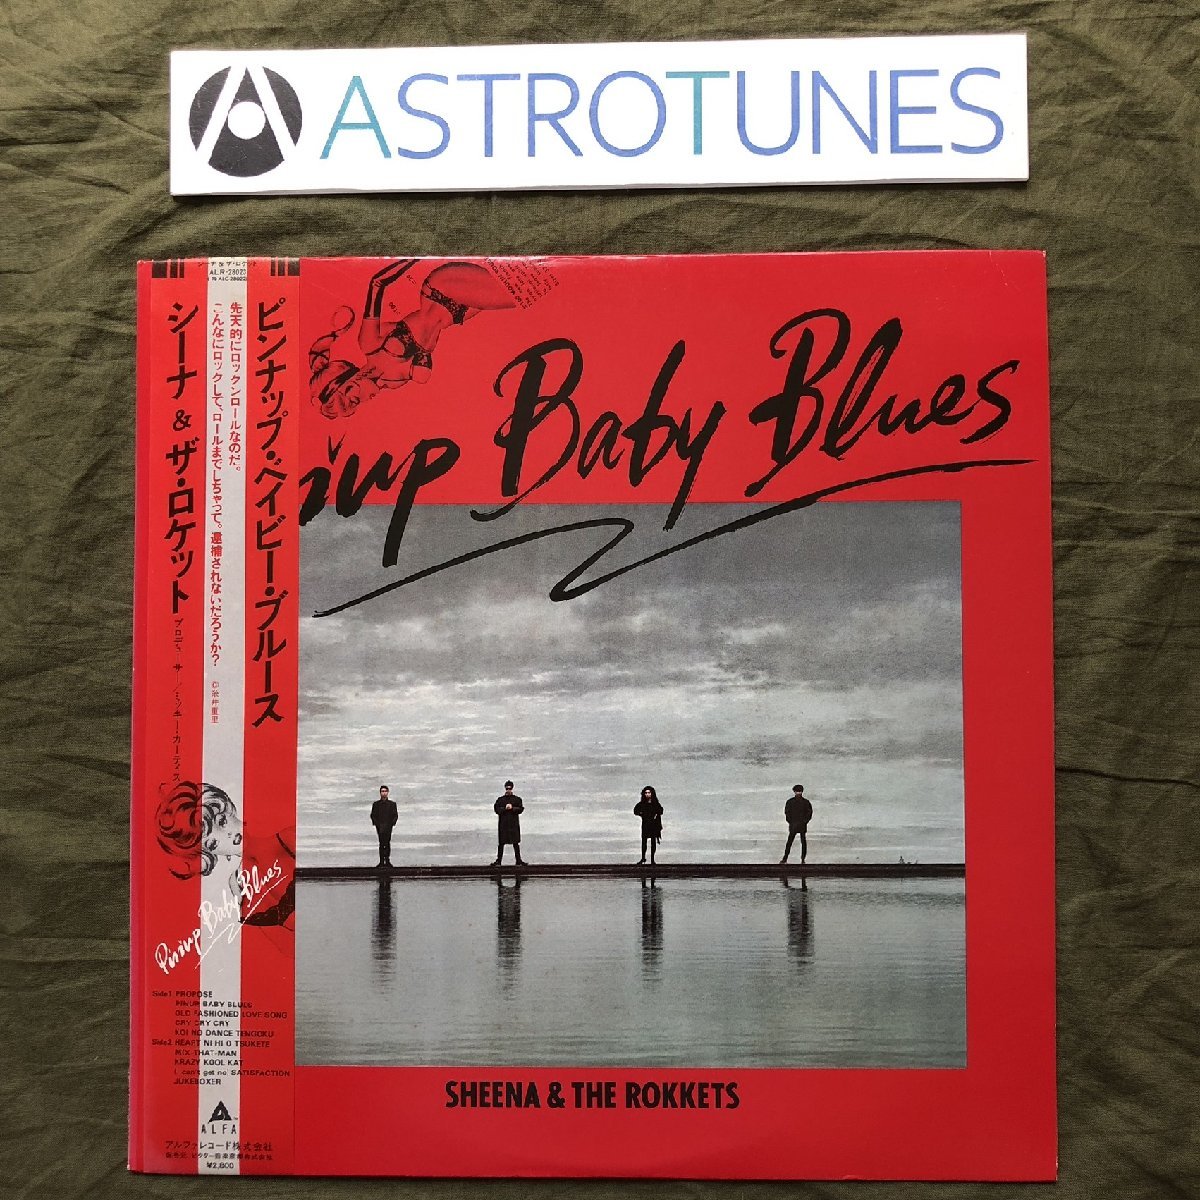 美盤 1981年 シーナ＆ロケッツ Sheena & The Rokkets LPレコード ピンナップ・ベイビー・ブルース Pinup Baby Blues 帯付 J-Rock 鮎川誠_画像1